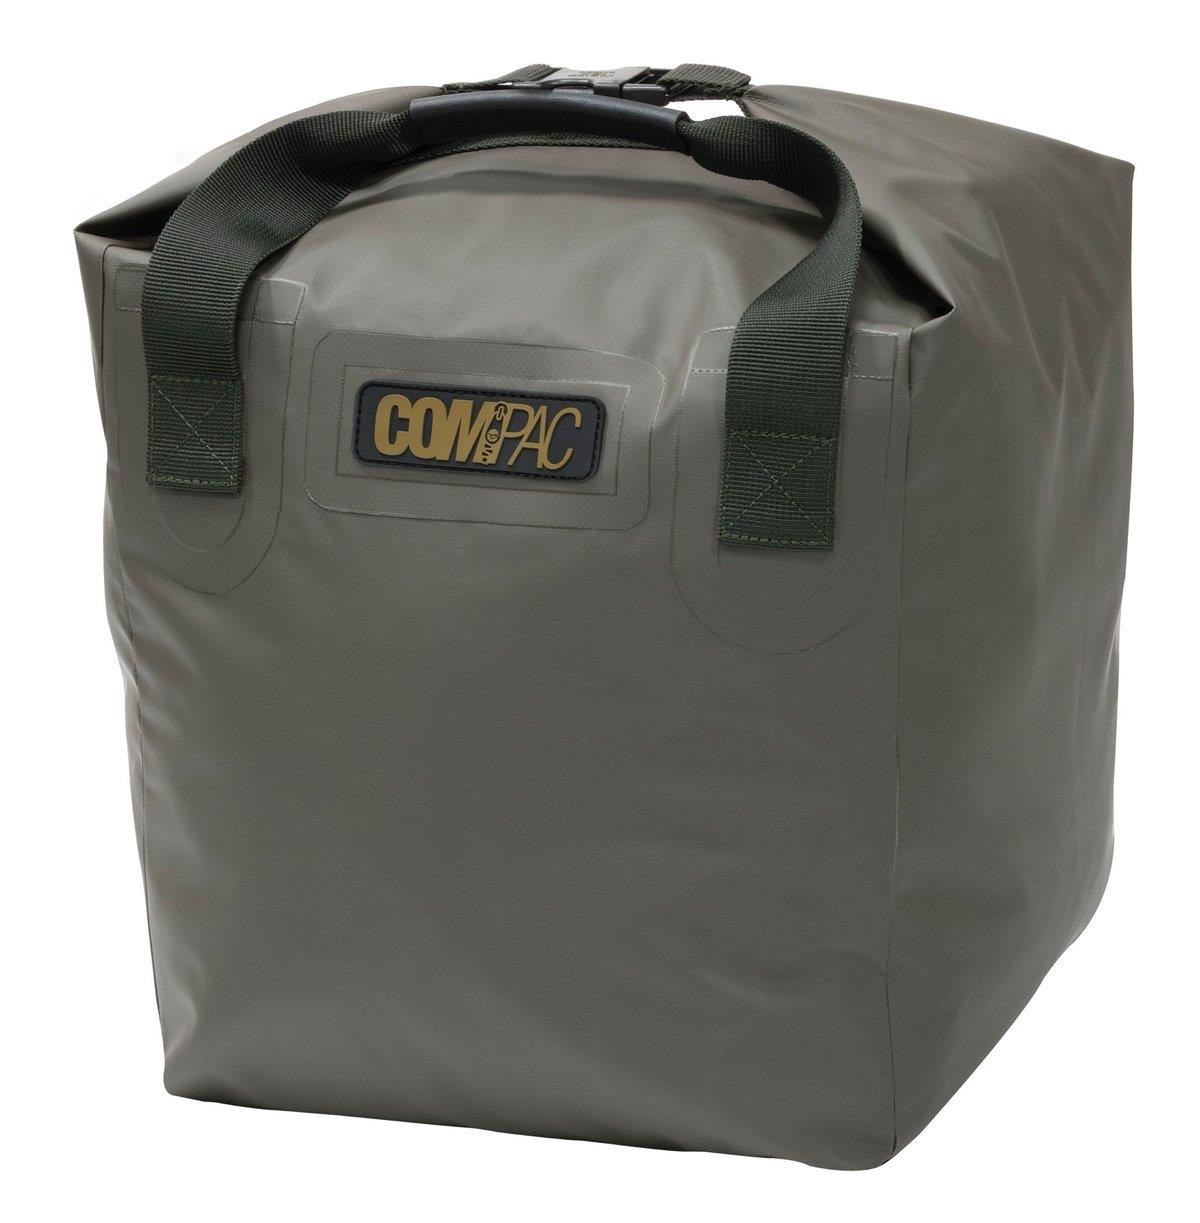 Korda Compac Dry Bag - Small